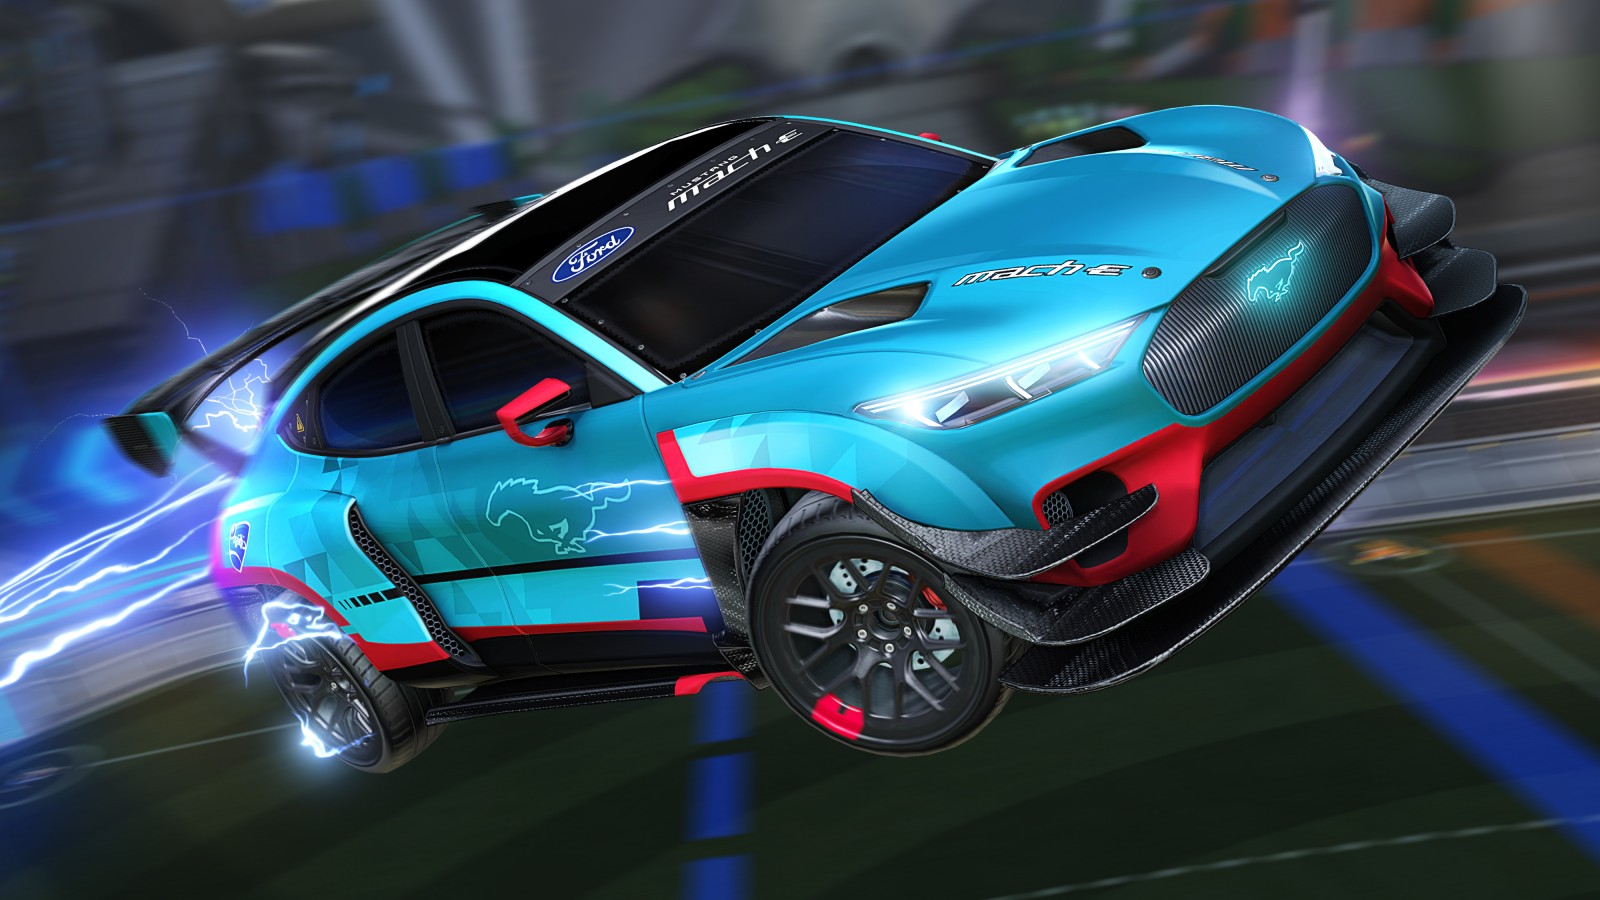 Rocket League: Ford y Psyonix anuncian una nueva colaboración 4